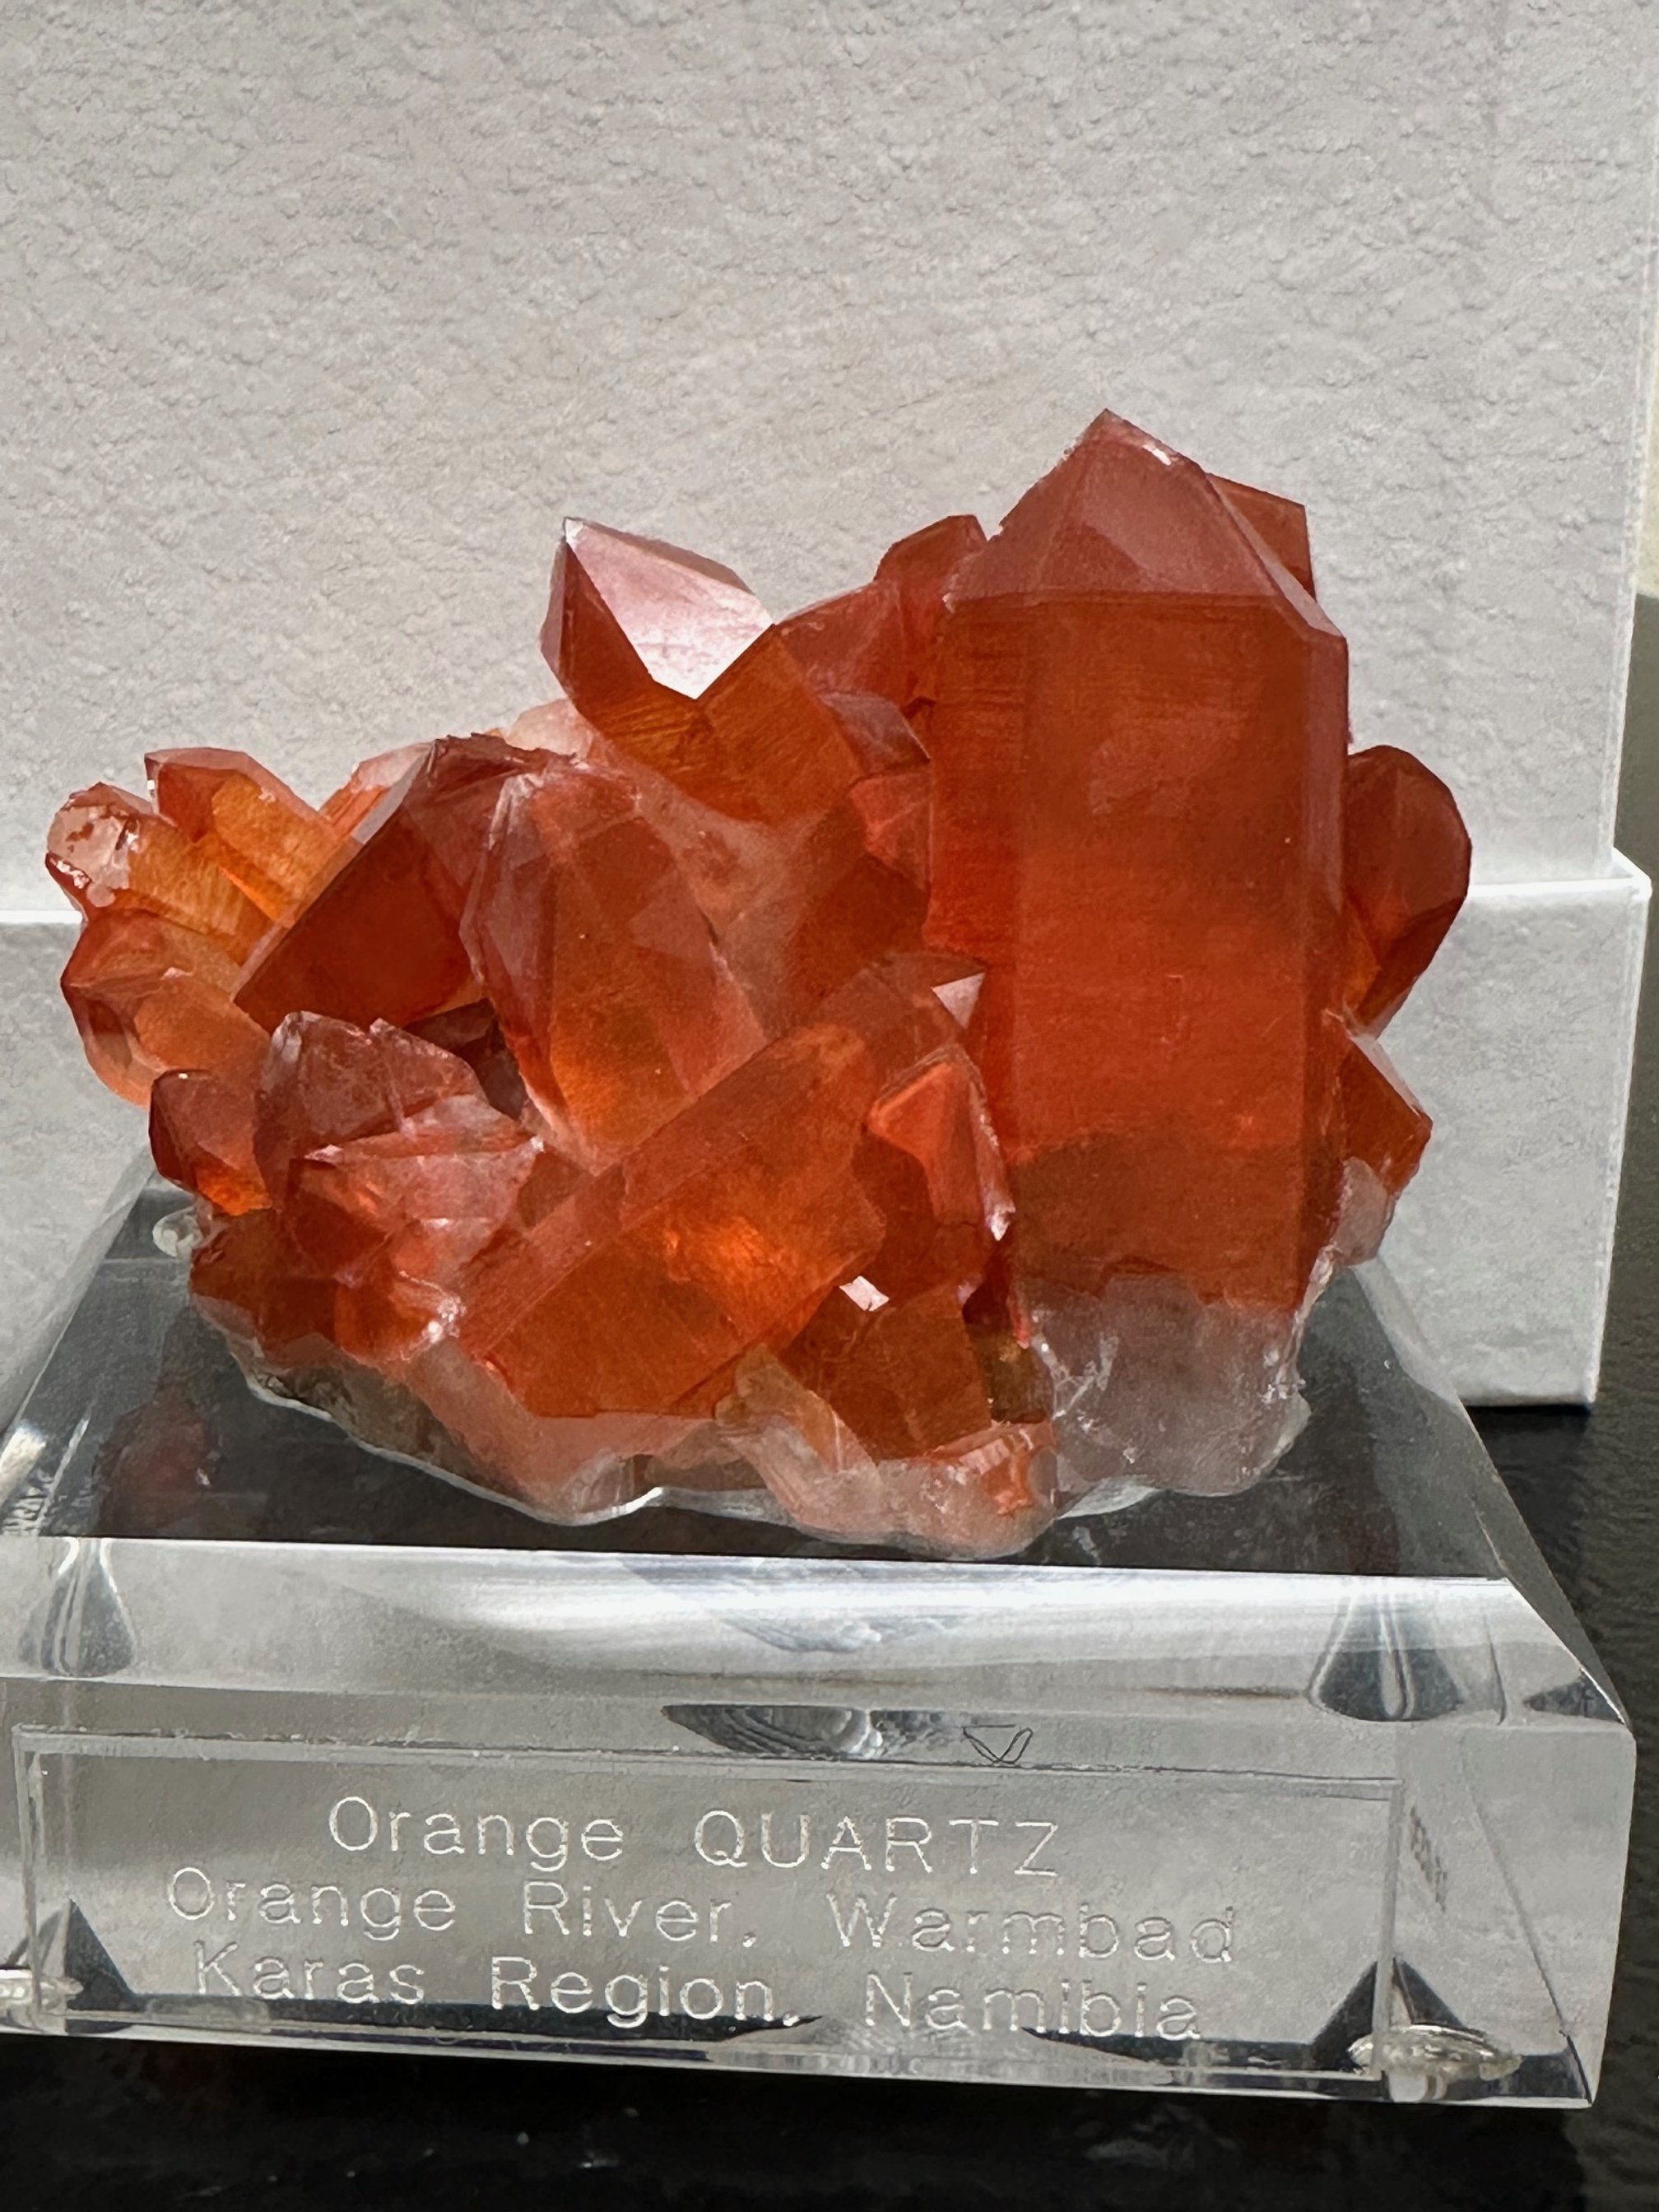 Orange River Quartz, sold